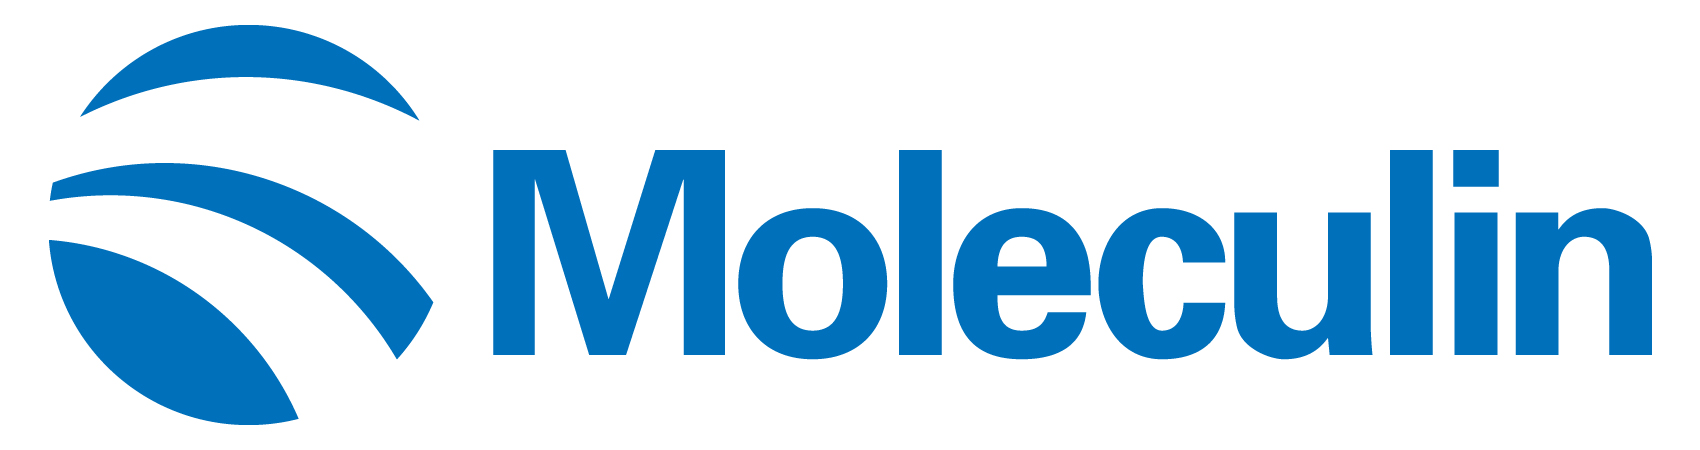 moleculin-logo_horiza18.jpg